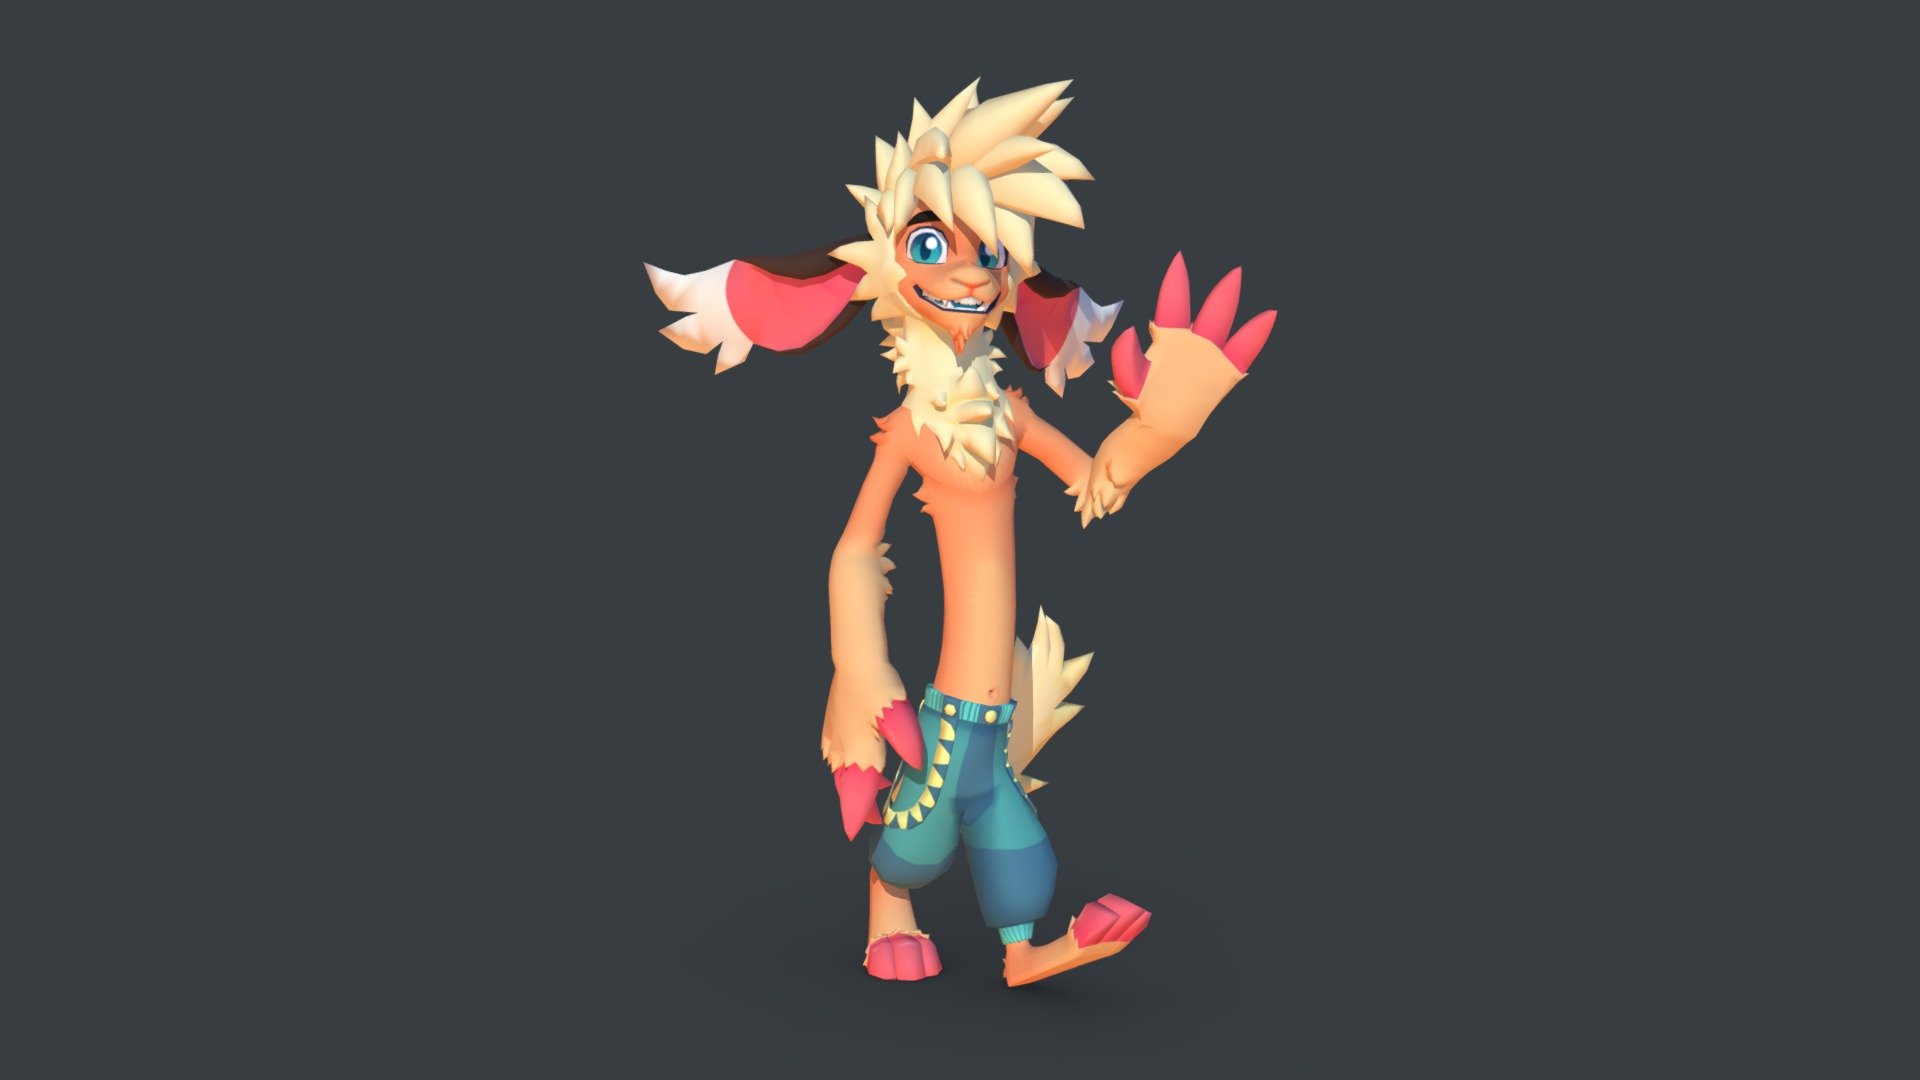 VRChat avatar of my monster sona

Made in Blender - Monster Dude v.2 - 3D model by SleepyPineapple 3d model